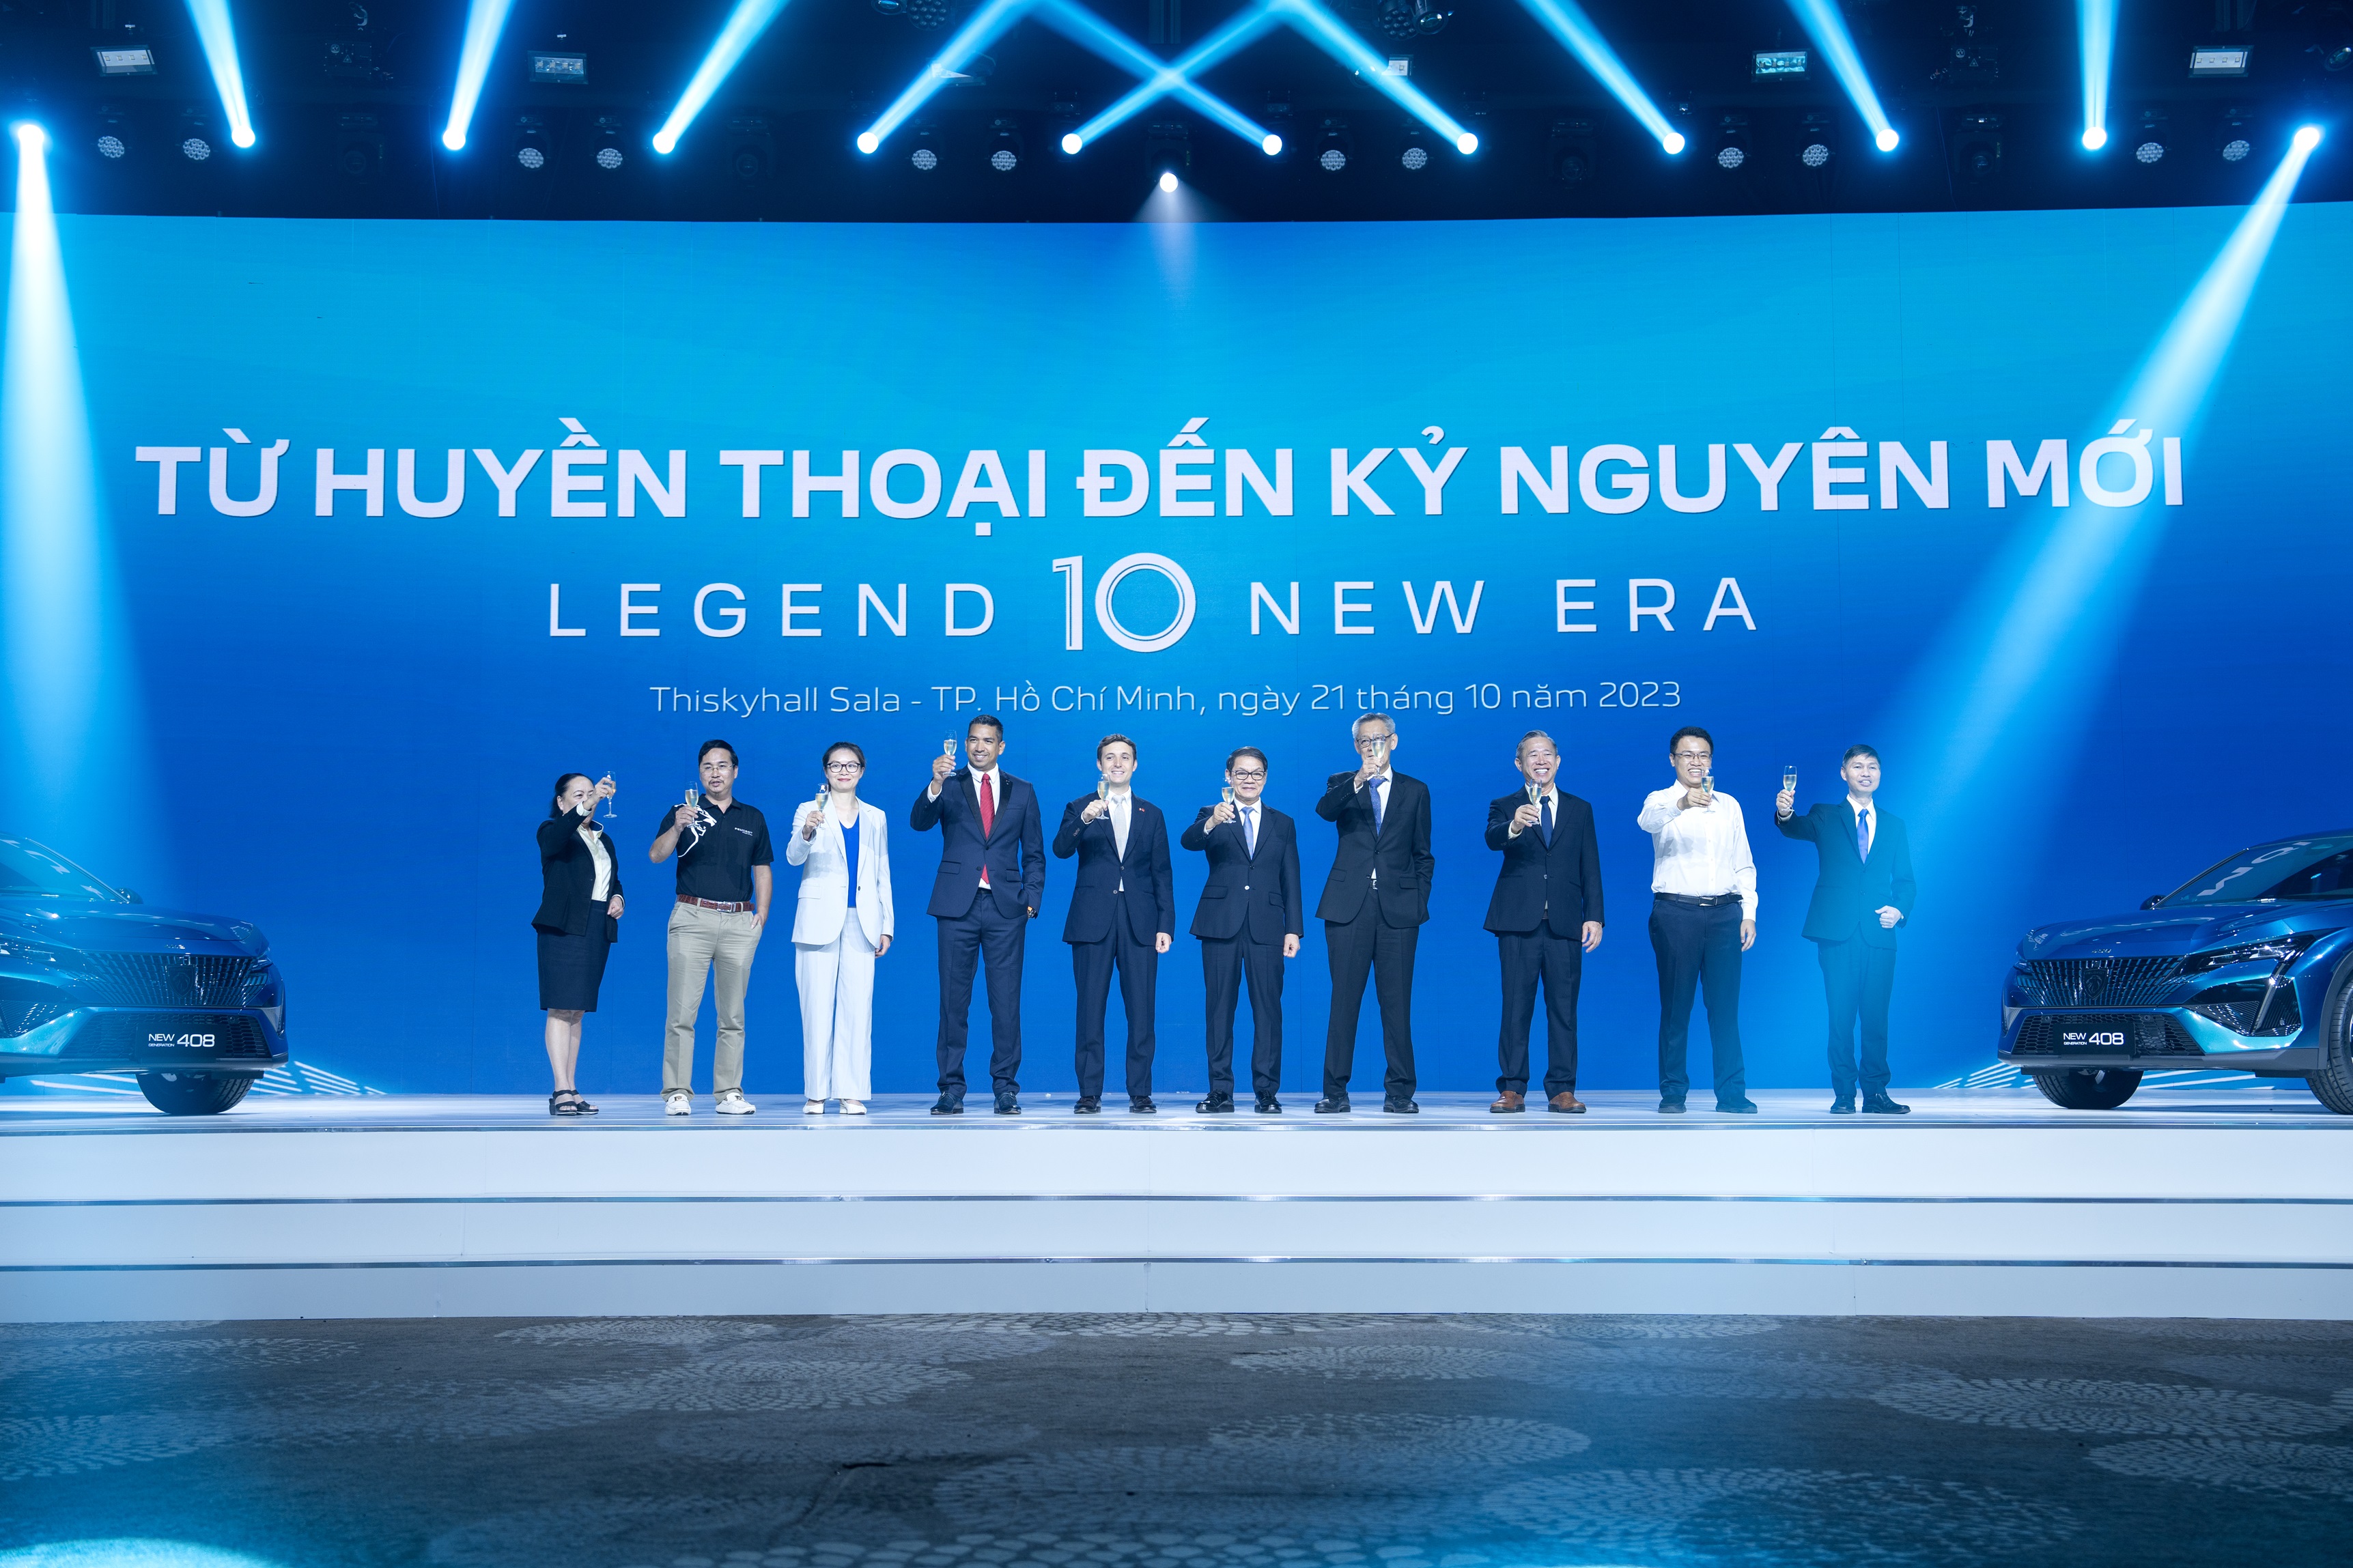 THACO AUTO tổ chức sự kiện "Từ huyền thoại đến kỷ nguyên mới“ và tri ân khách hàng nhân Kỷ niệm 10 năm Peugeot có mặt tại Việt Nam